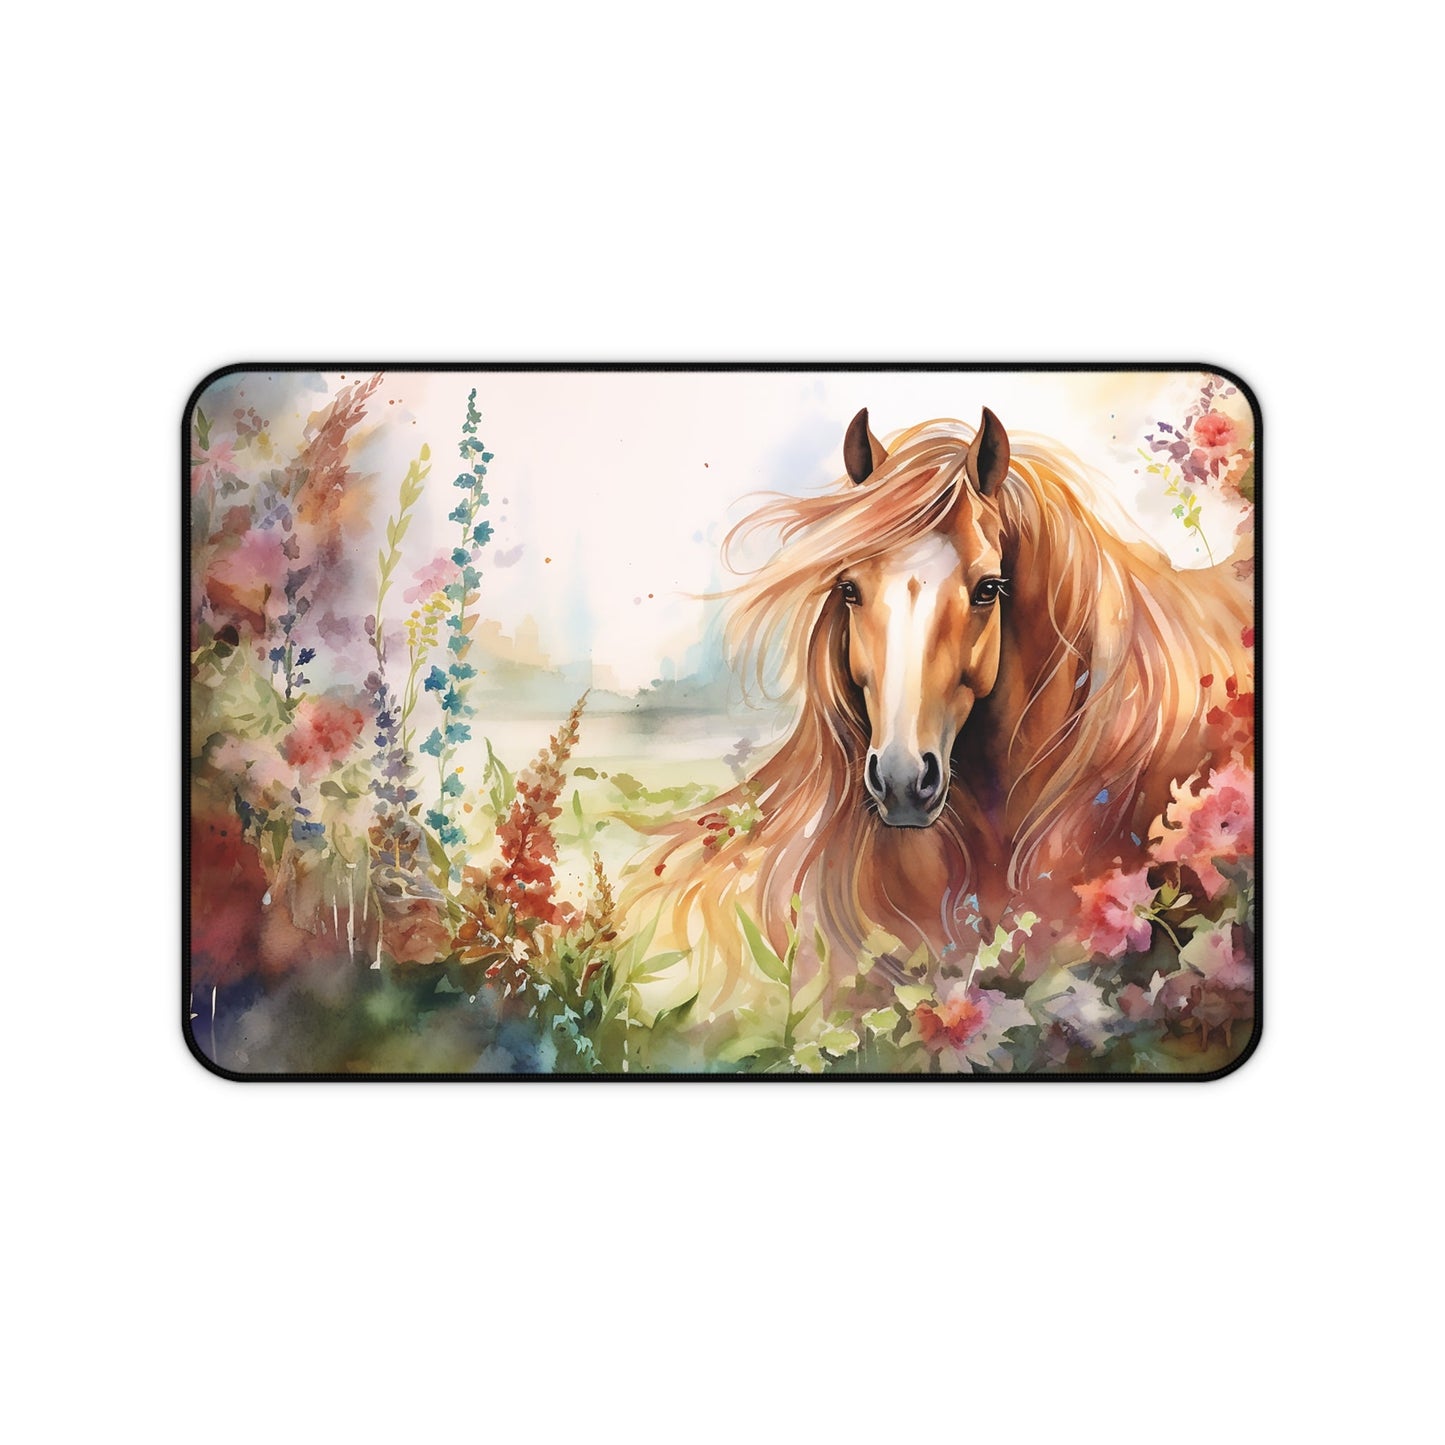 Little Girl Dream Horse Mouse Pad/ Desk Mat - Girls and Ponies, Horse Lover Girls, Horse Art Illustration,Trendy Desk Mat Horse Lover Office - FlooredByArt